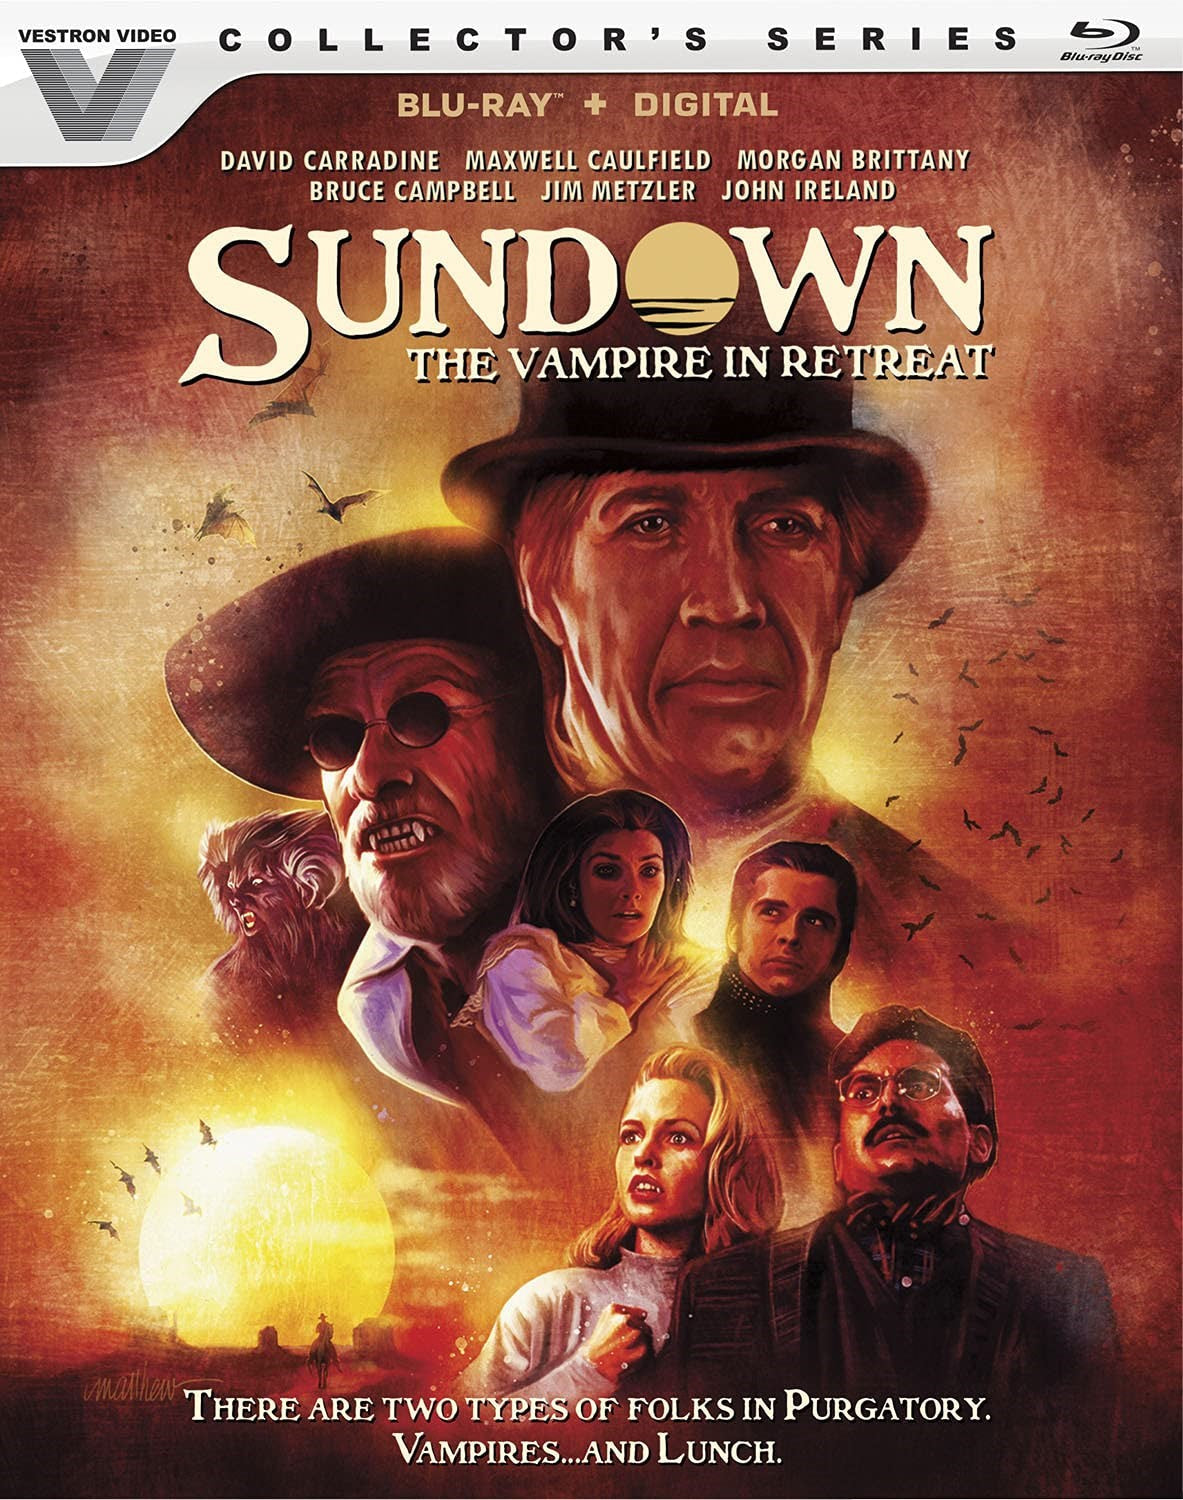 Sundown: The Vampire In Retreat Blu-Ray Blu-Ray